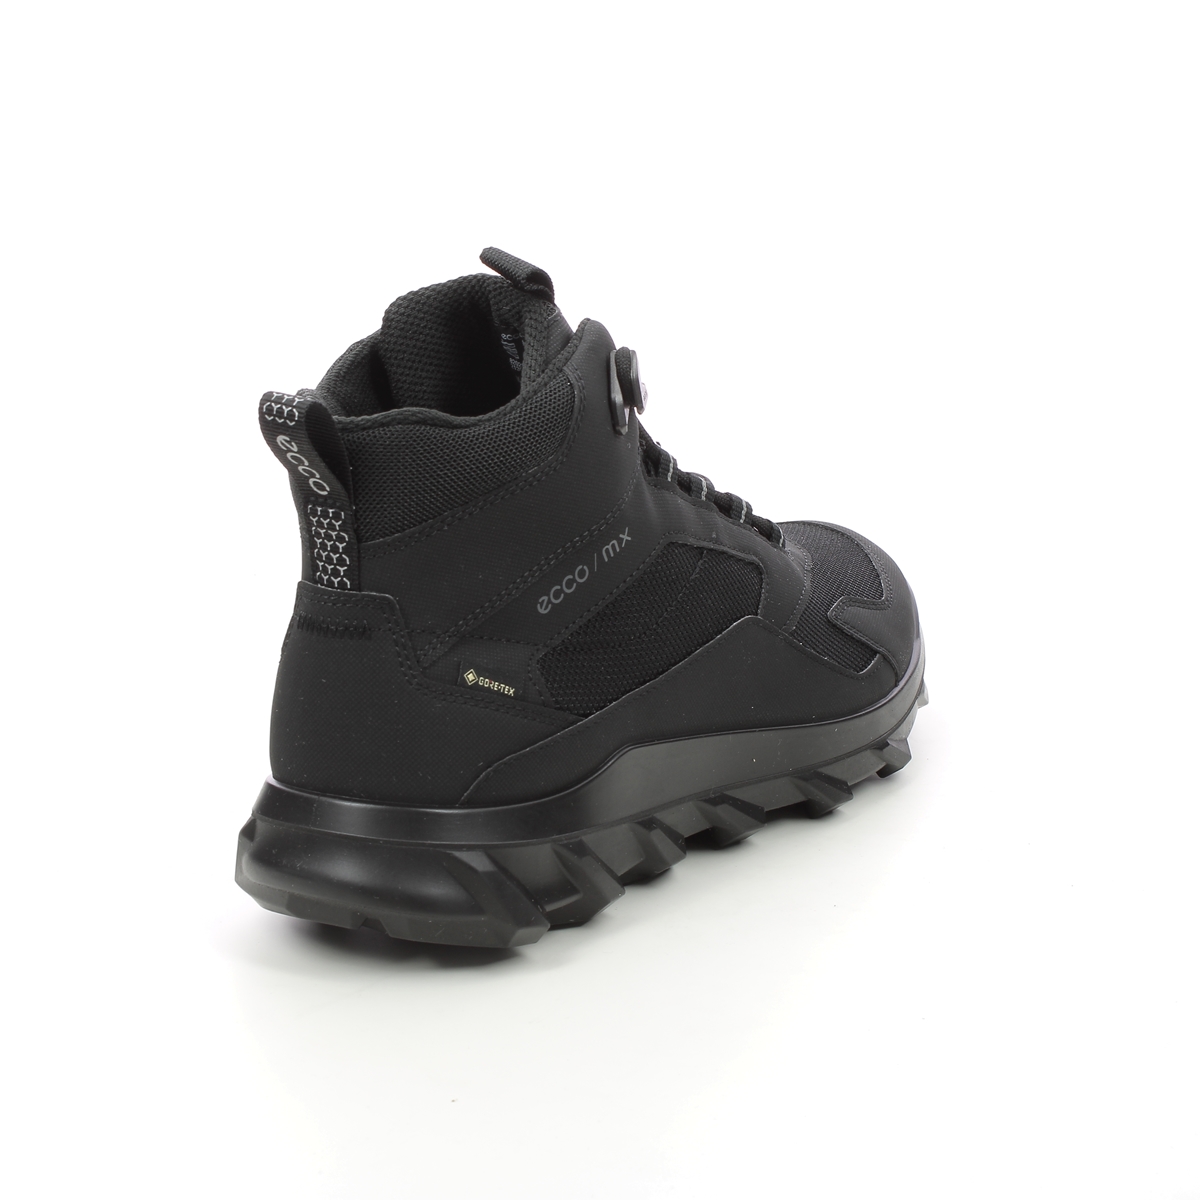 ECCO Mens Outdoor Walking Boots in Black 820224-51052